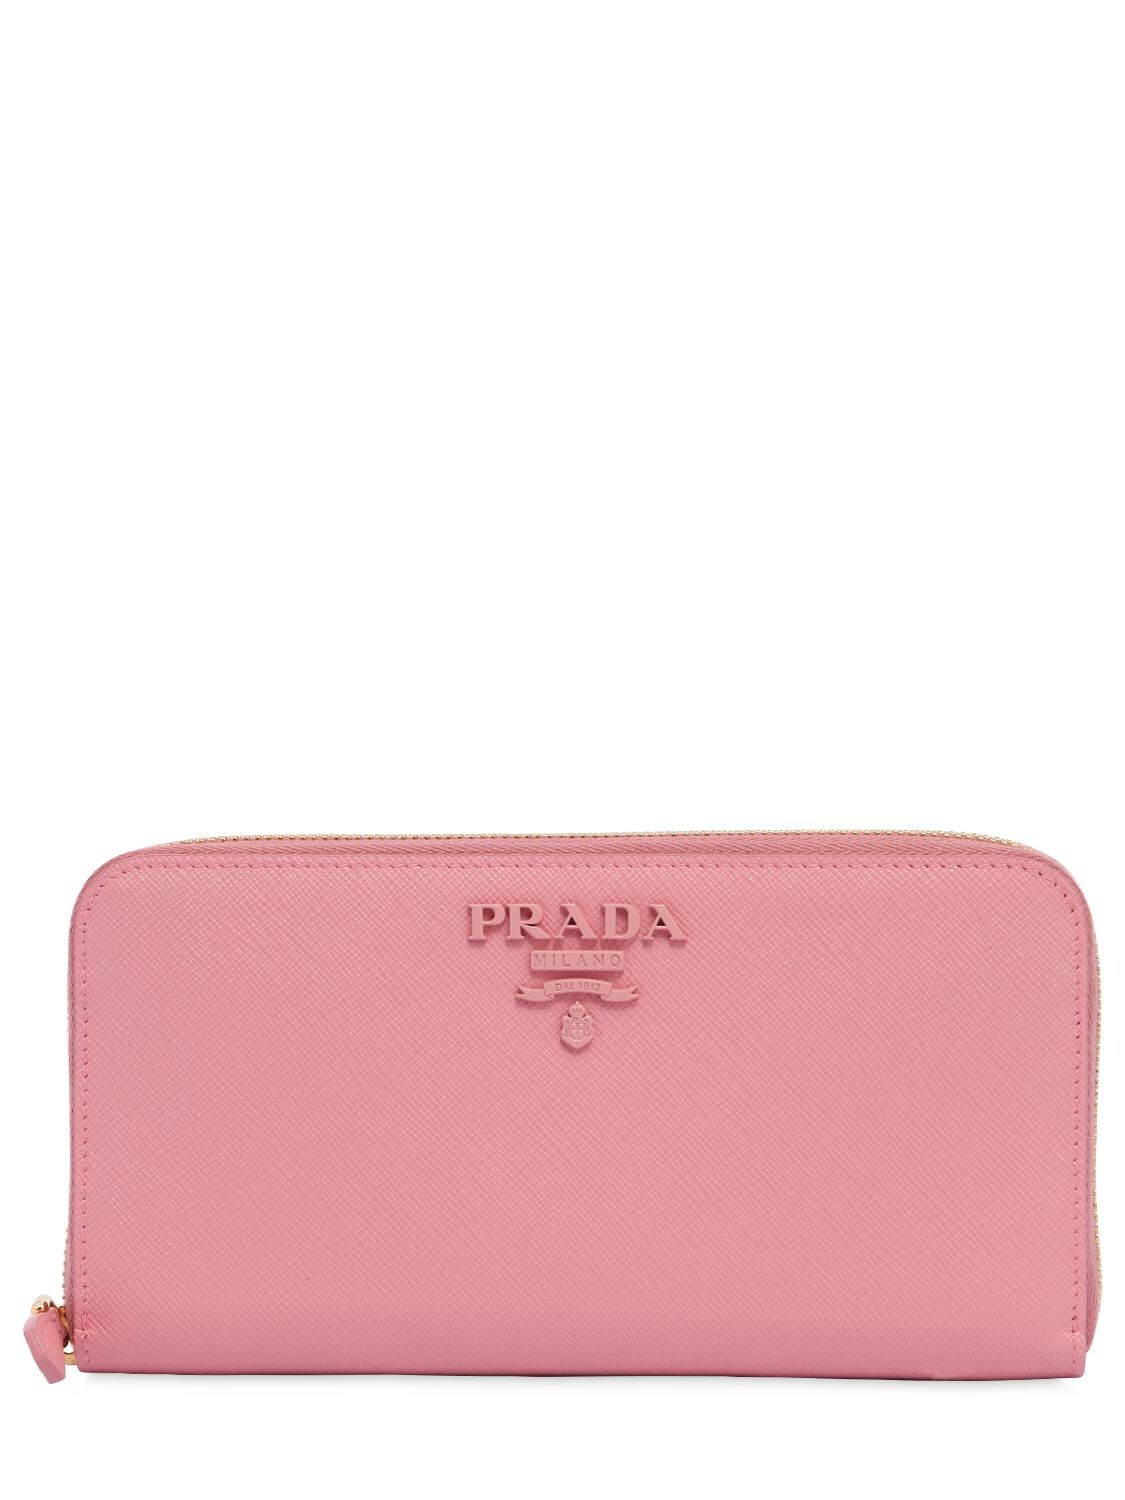 Prada Saffiano Leather Zip Around Wallet In Pink